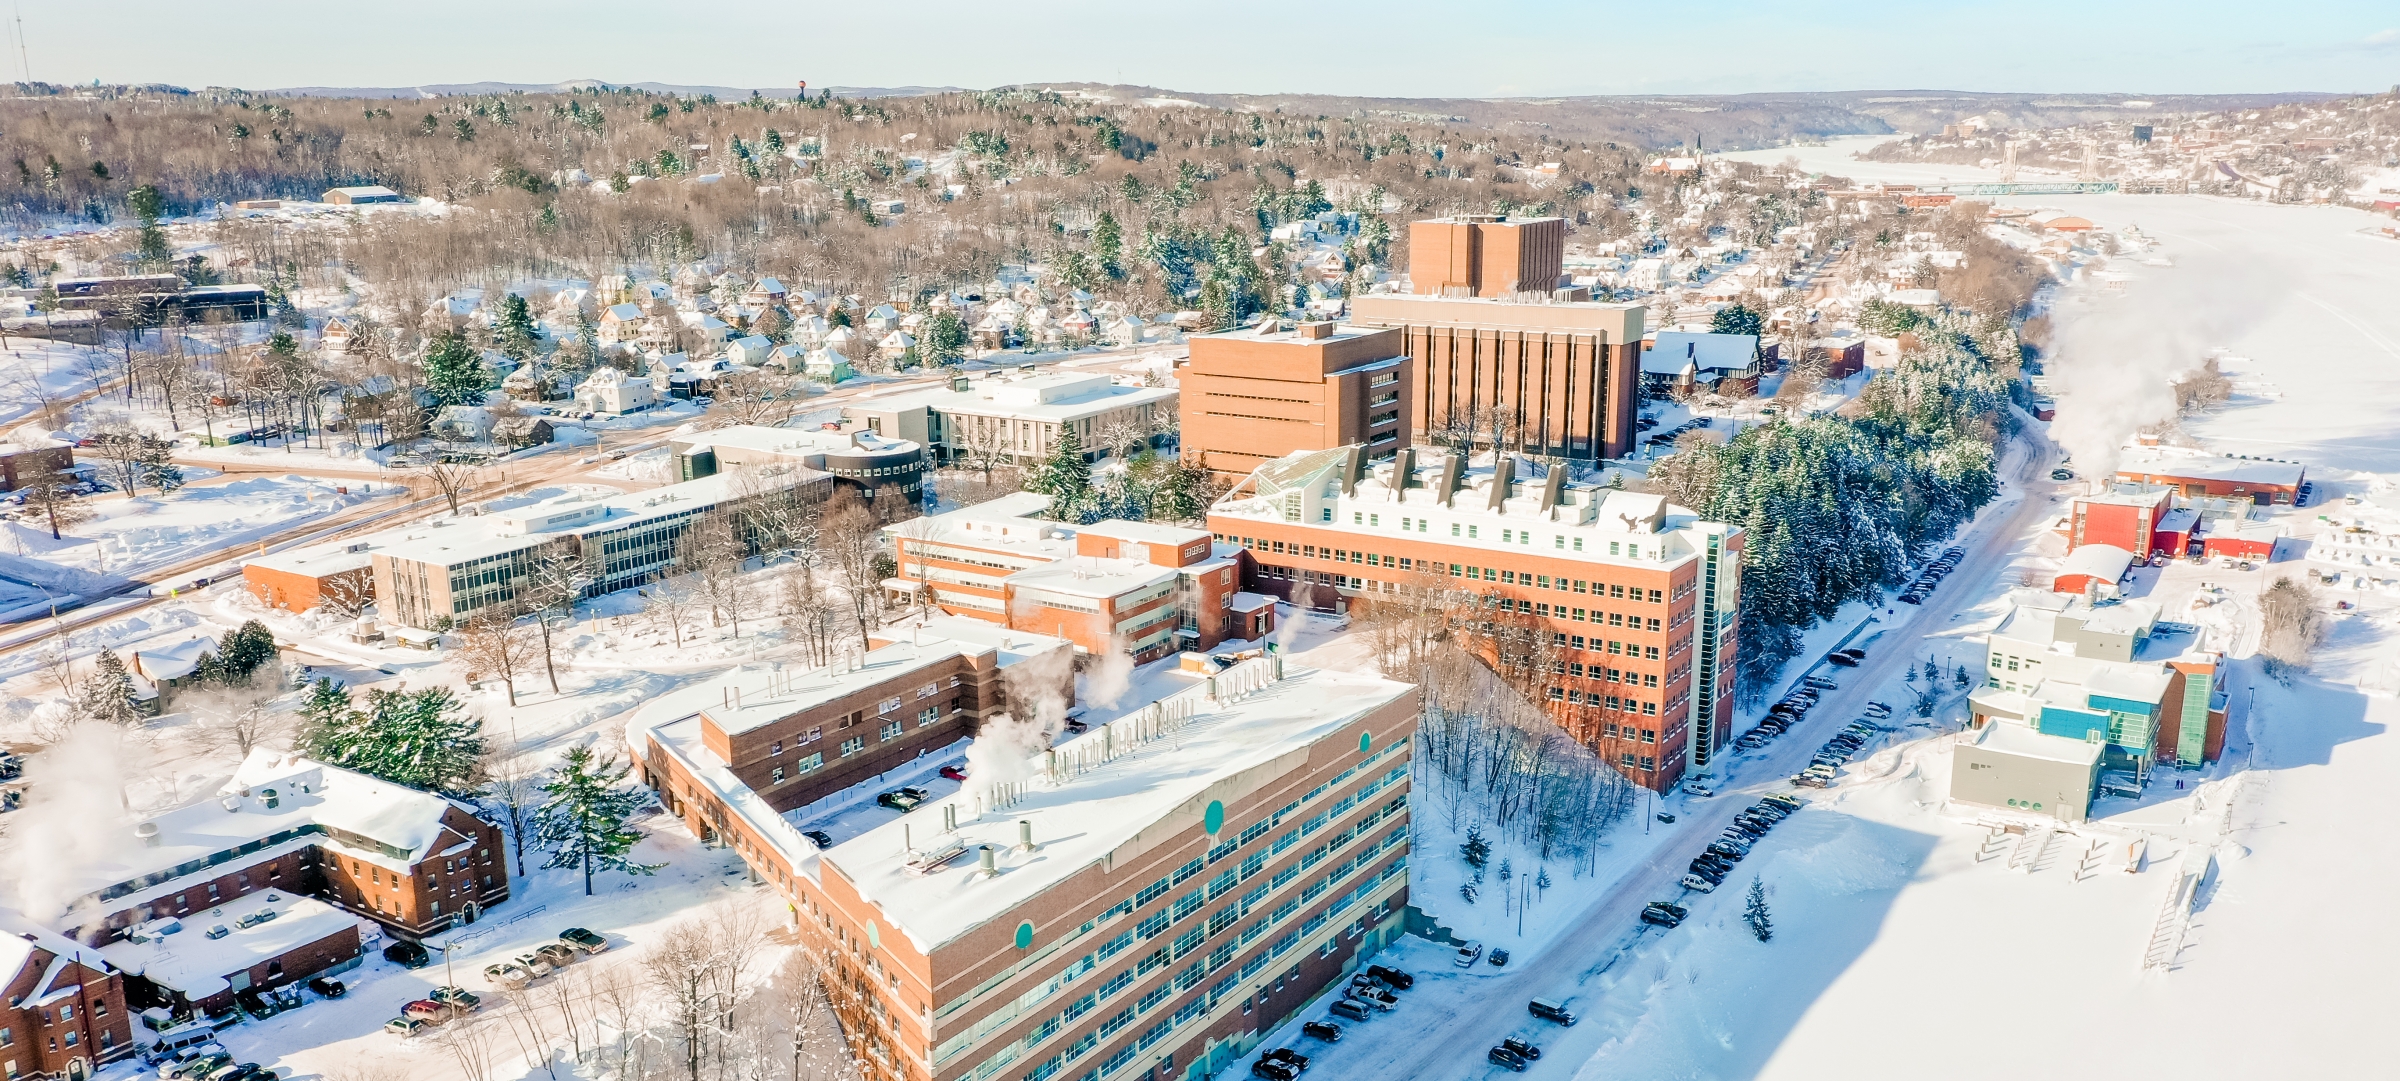 Campus vista during winter